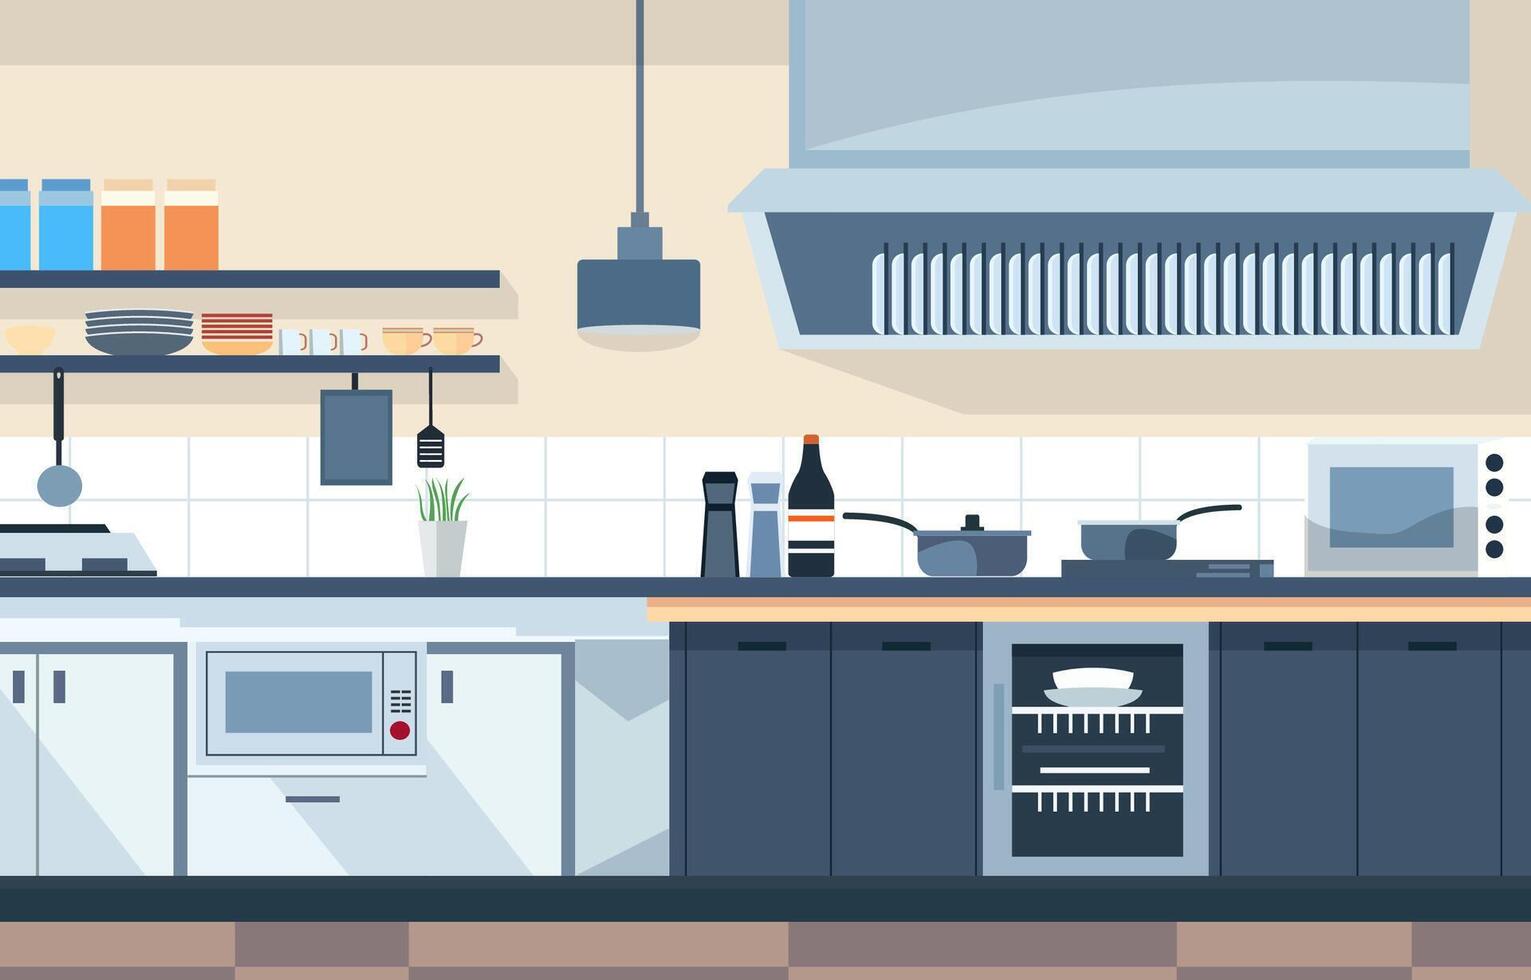 vlak ontwerp van modern keuken interieur in restaurant met opslagruimte schappen en fornuis vector